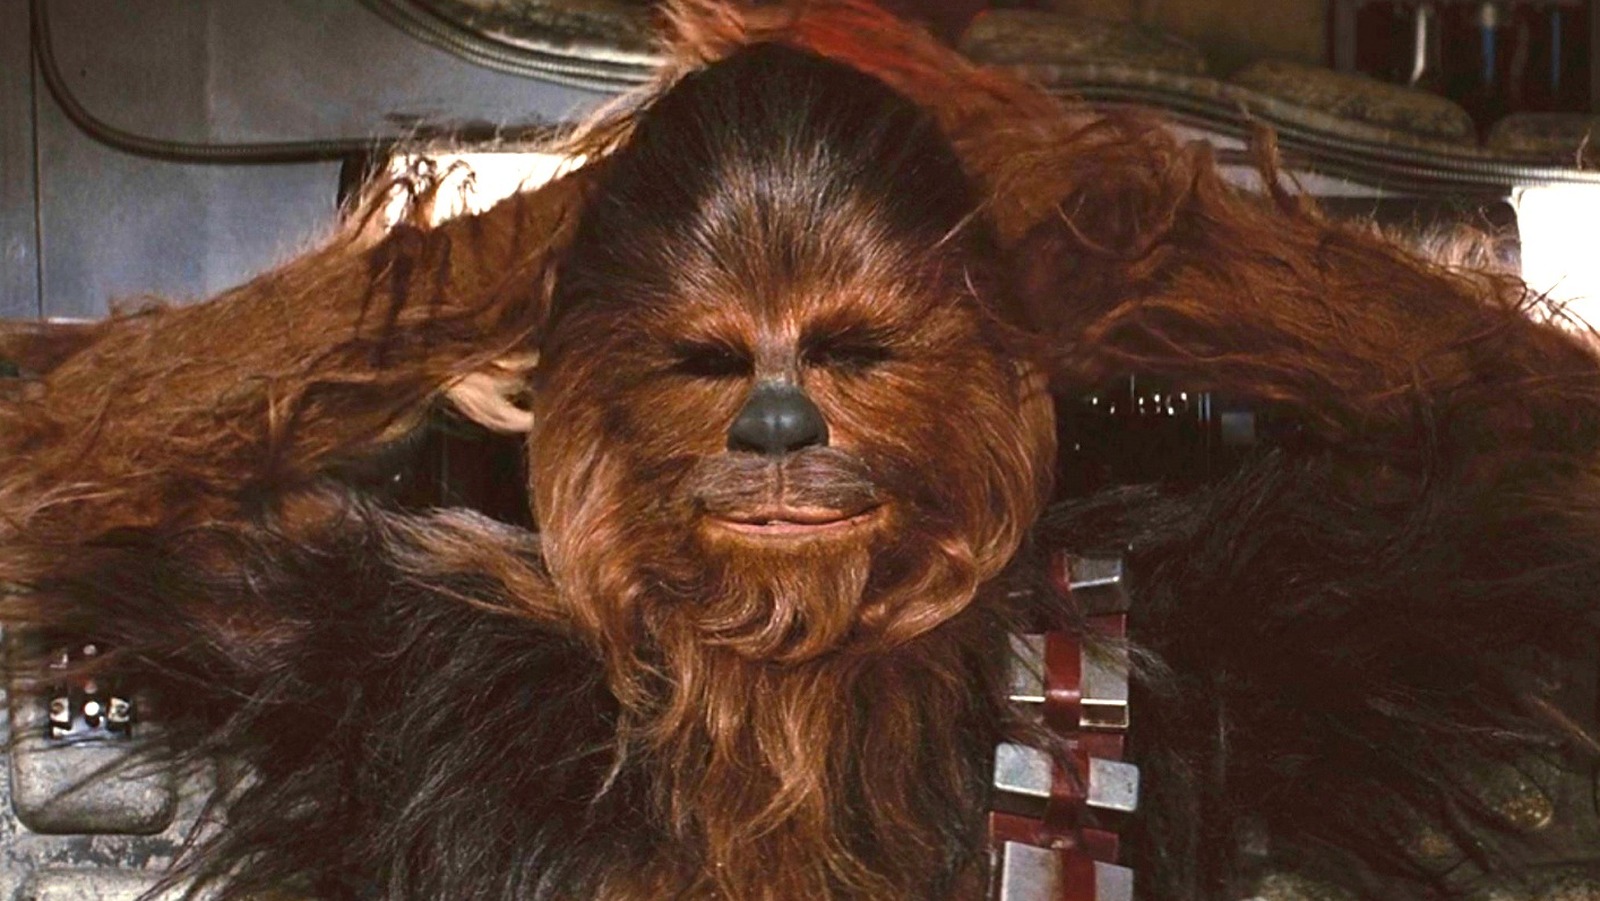 Chewbacca  Star wars, Star wars episodes, Star wars fans